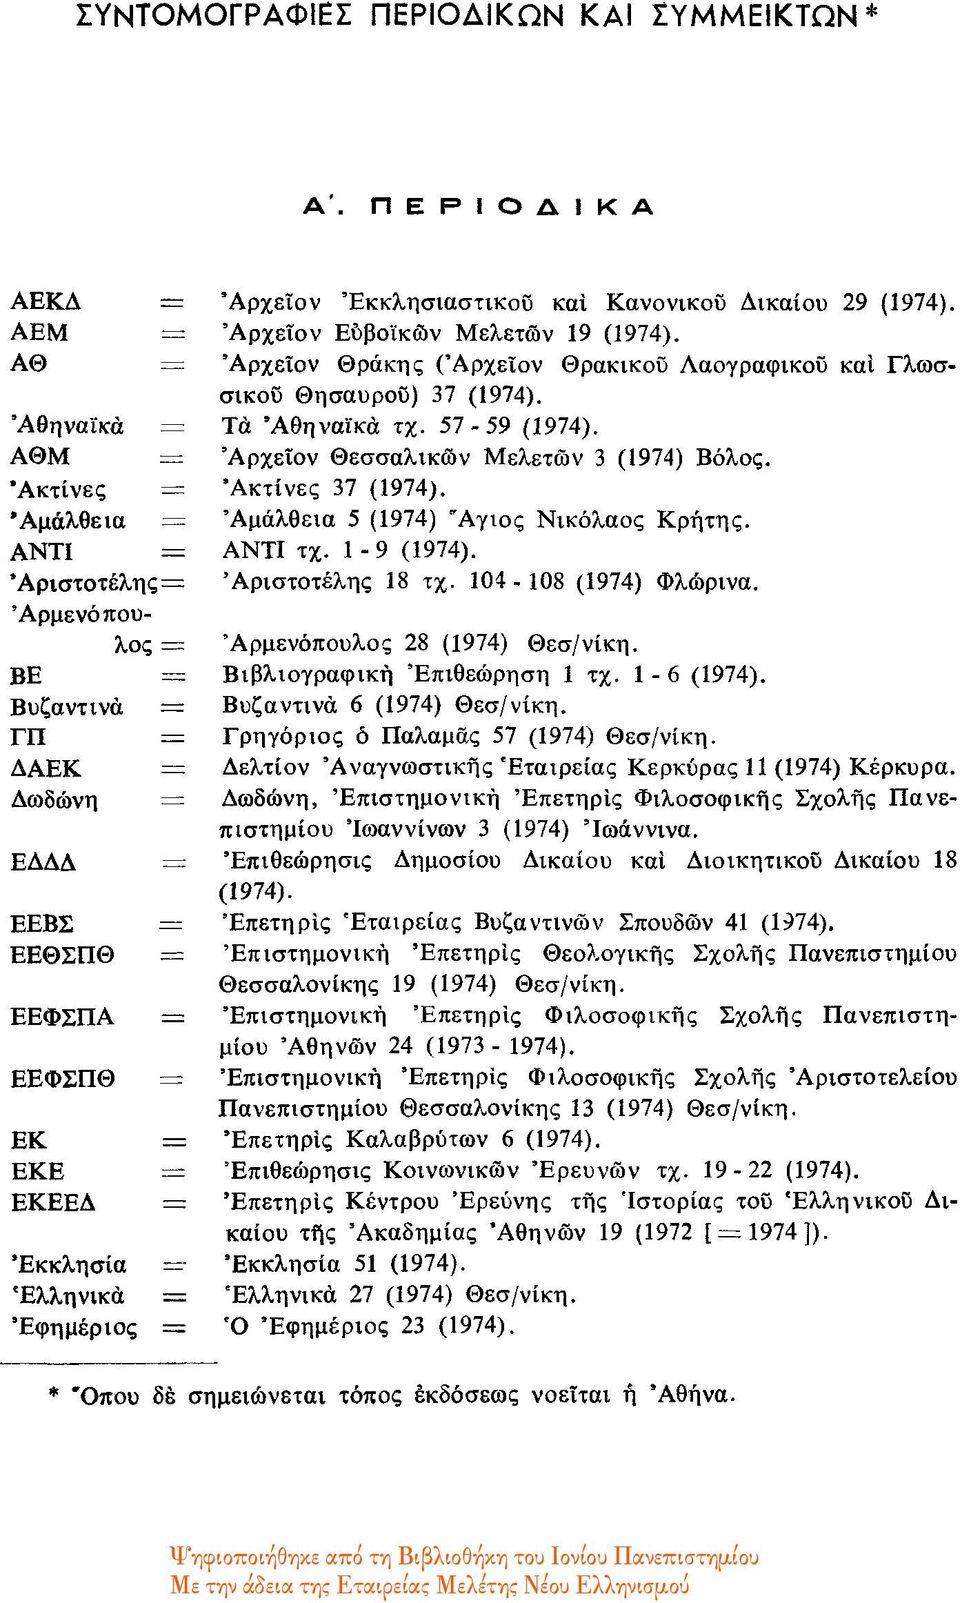 Ακτίνες = Ακτίνες 37 (1974). Αμάλθεια = Αμάλθεια 5 (1974) Άγιος Νικόλαος Κρήτης. ΑΝΤΙ = ΑΝΤΙ τχ. 1-9 (1974). Άριστοτέλης= Αριστοτέλης 18 τχ. 104-108 (1974) Φλώρινα.